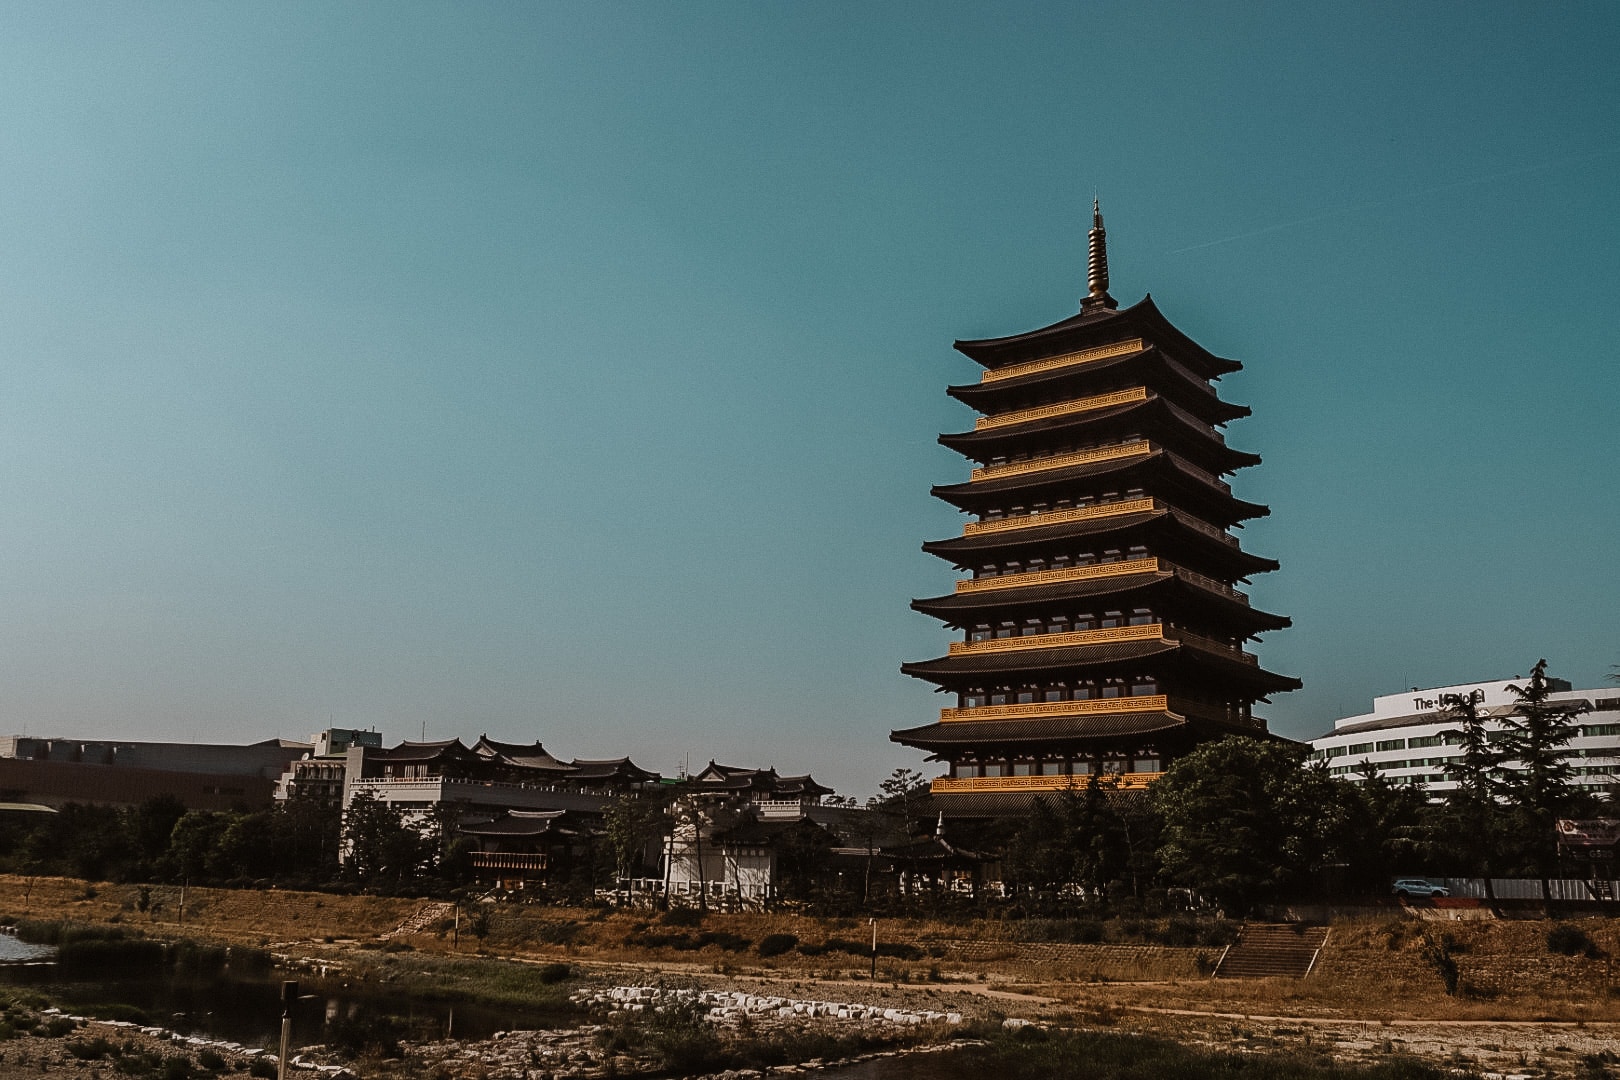 Tegenover de Gyeongju Tower is de Pagoda te zien waarop de toren gebaseerd is